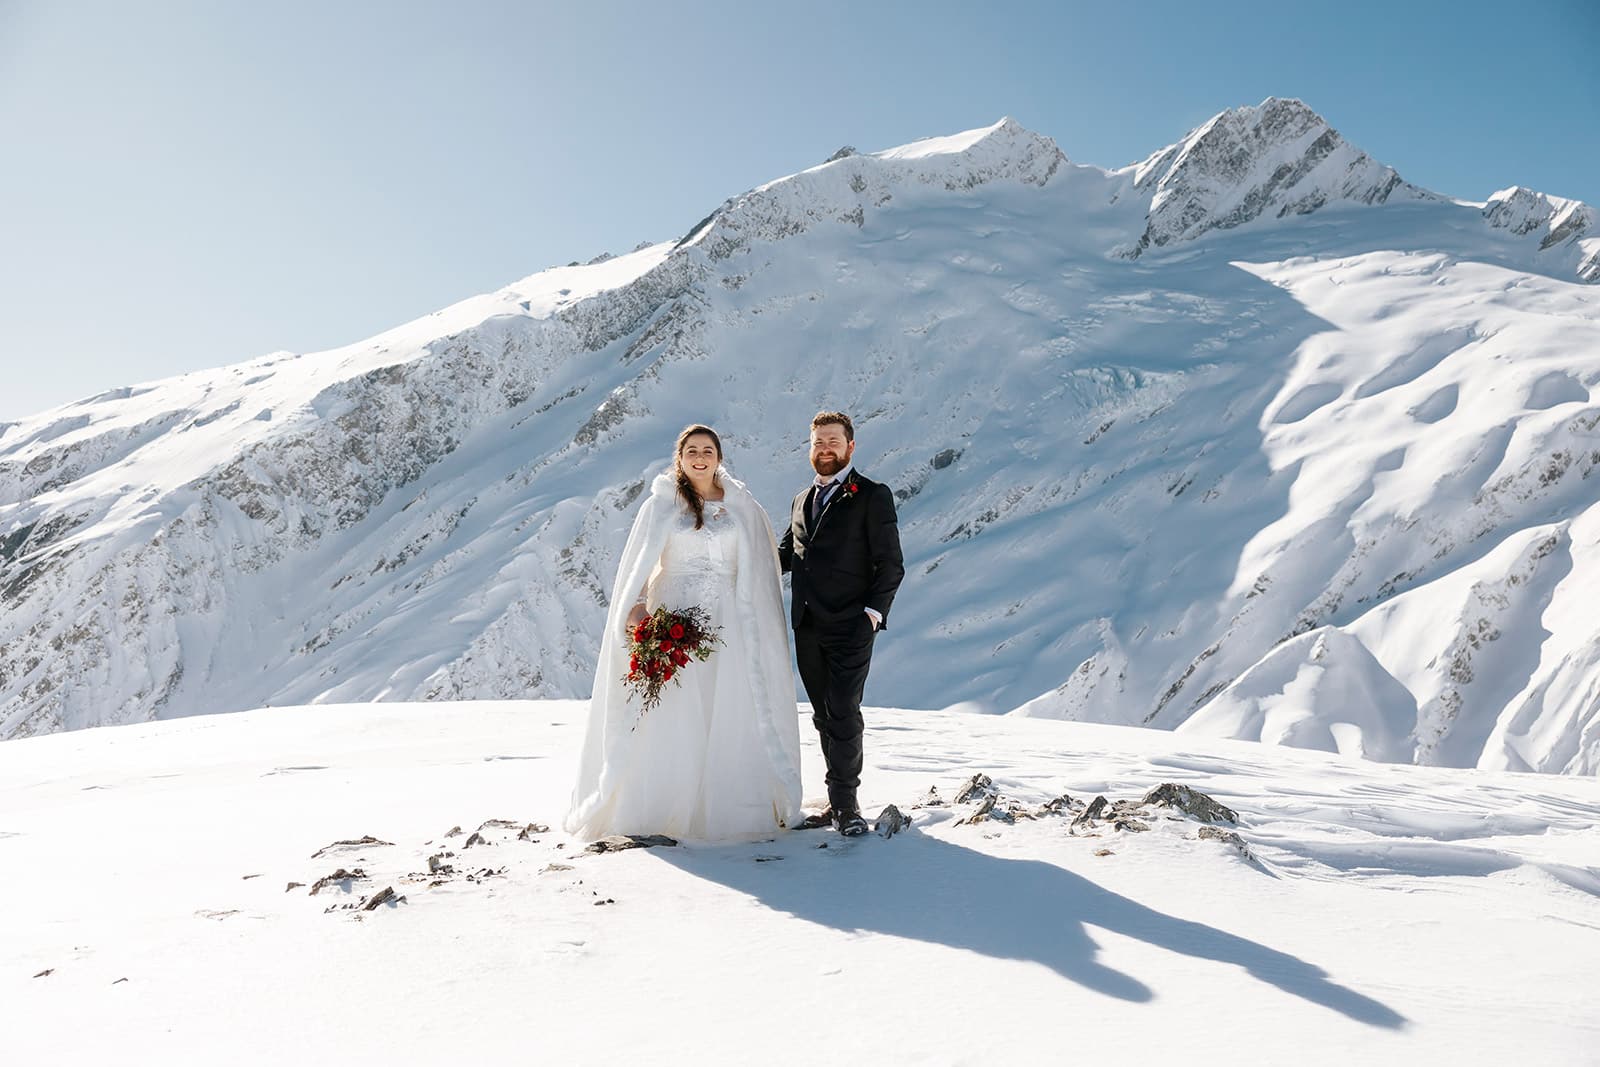 Snowy winter wedding in Queenstown New Zealand